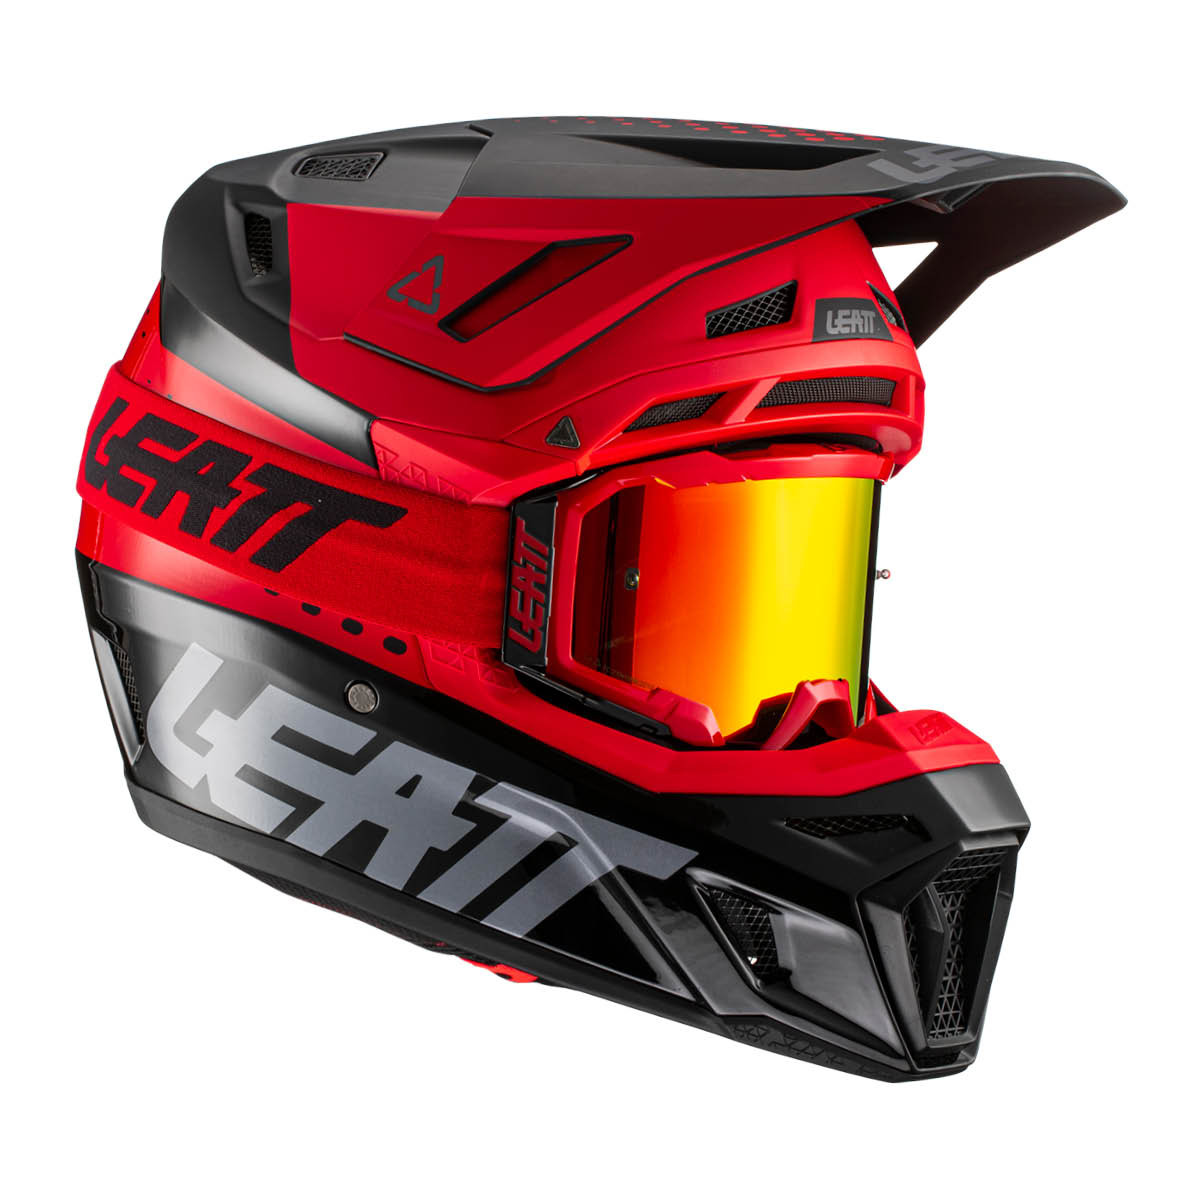 LEATT Helm Moto 8.5 V22 inkl. Brille, S rot